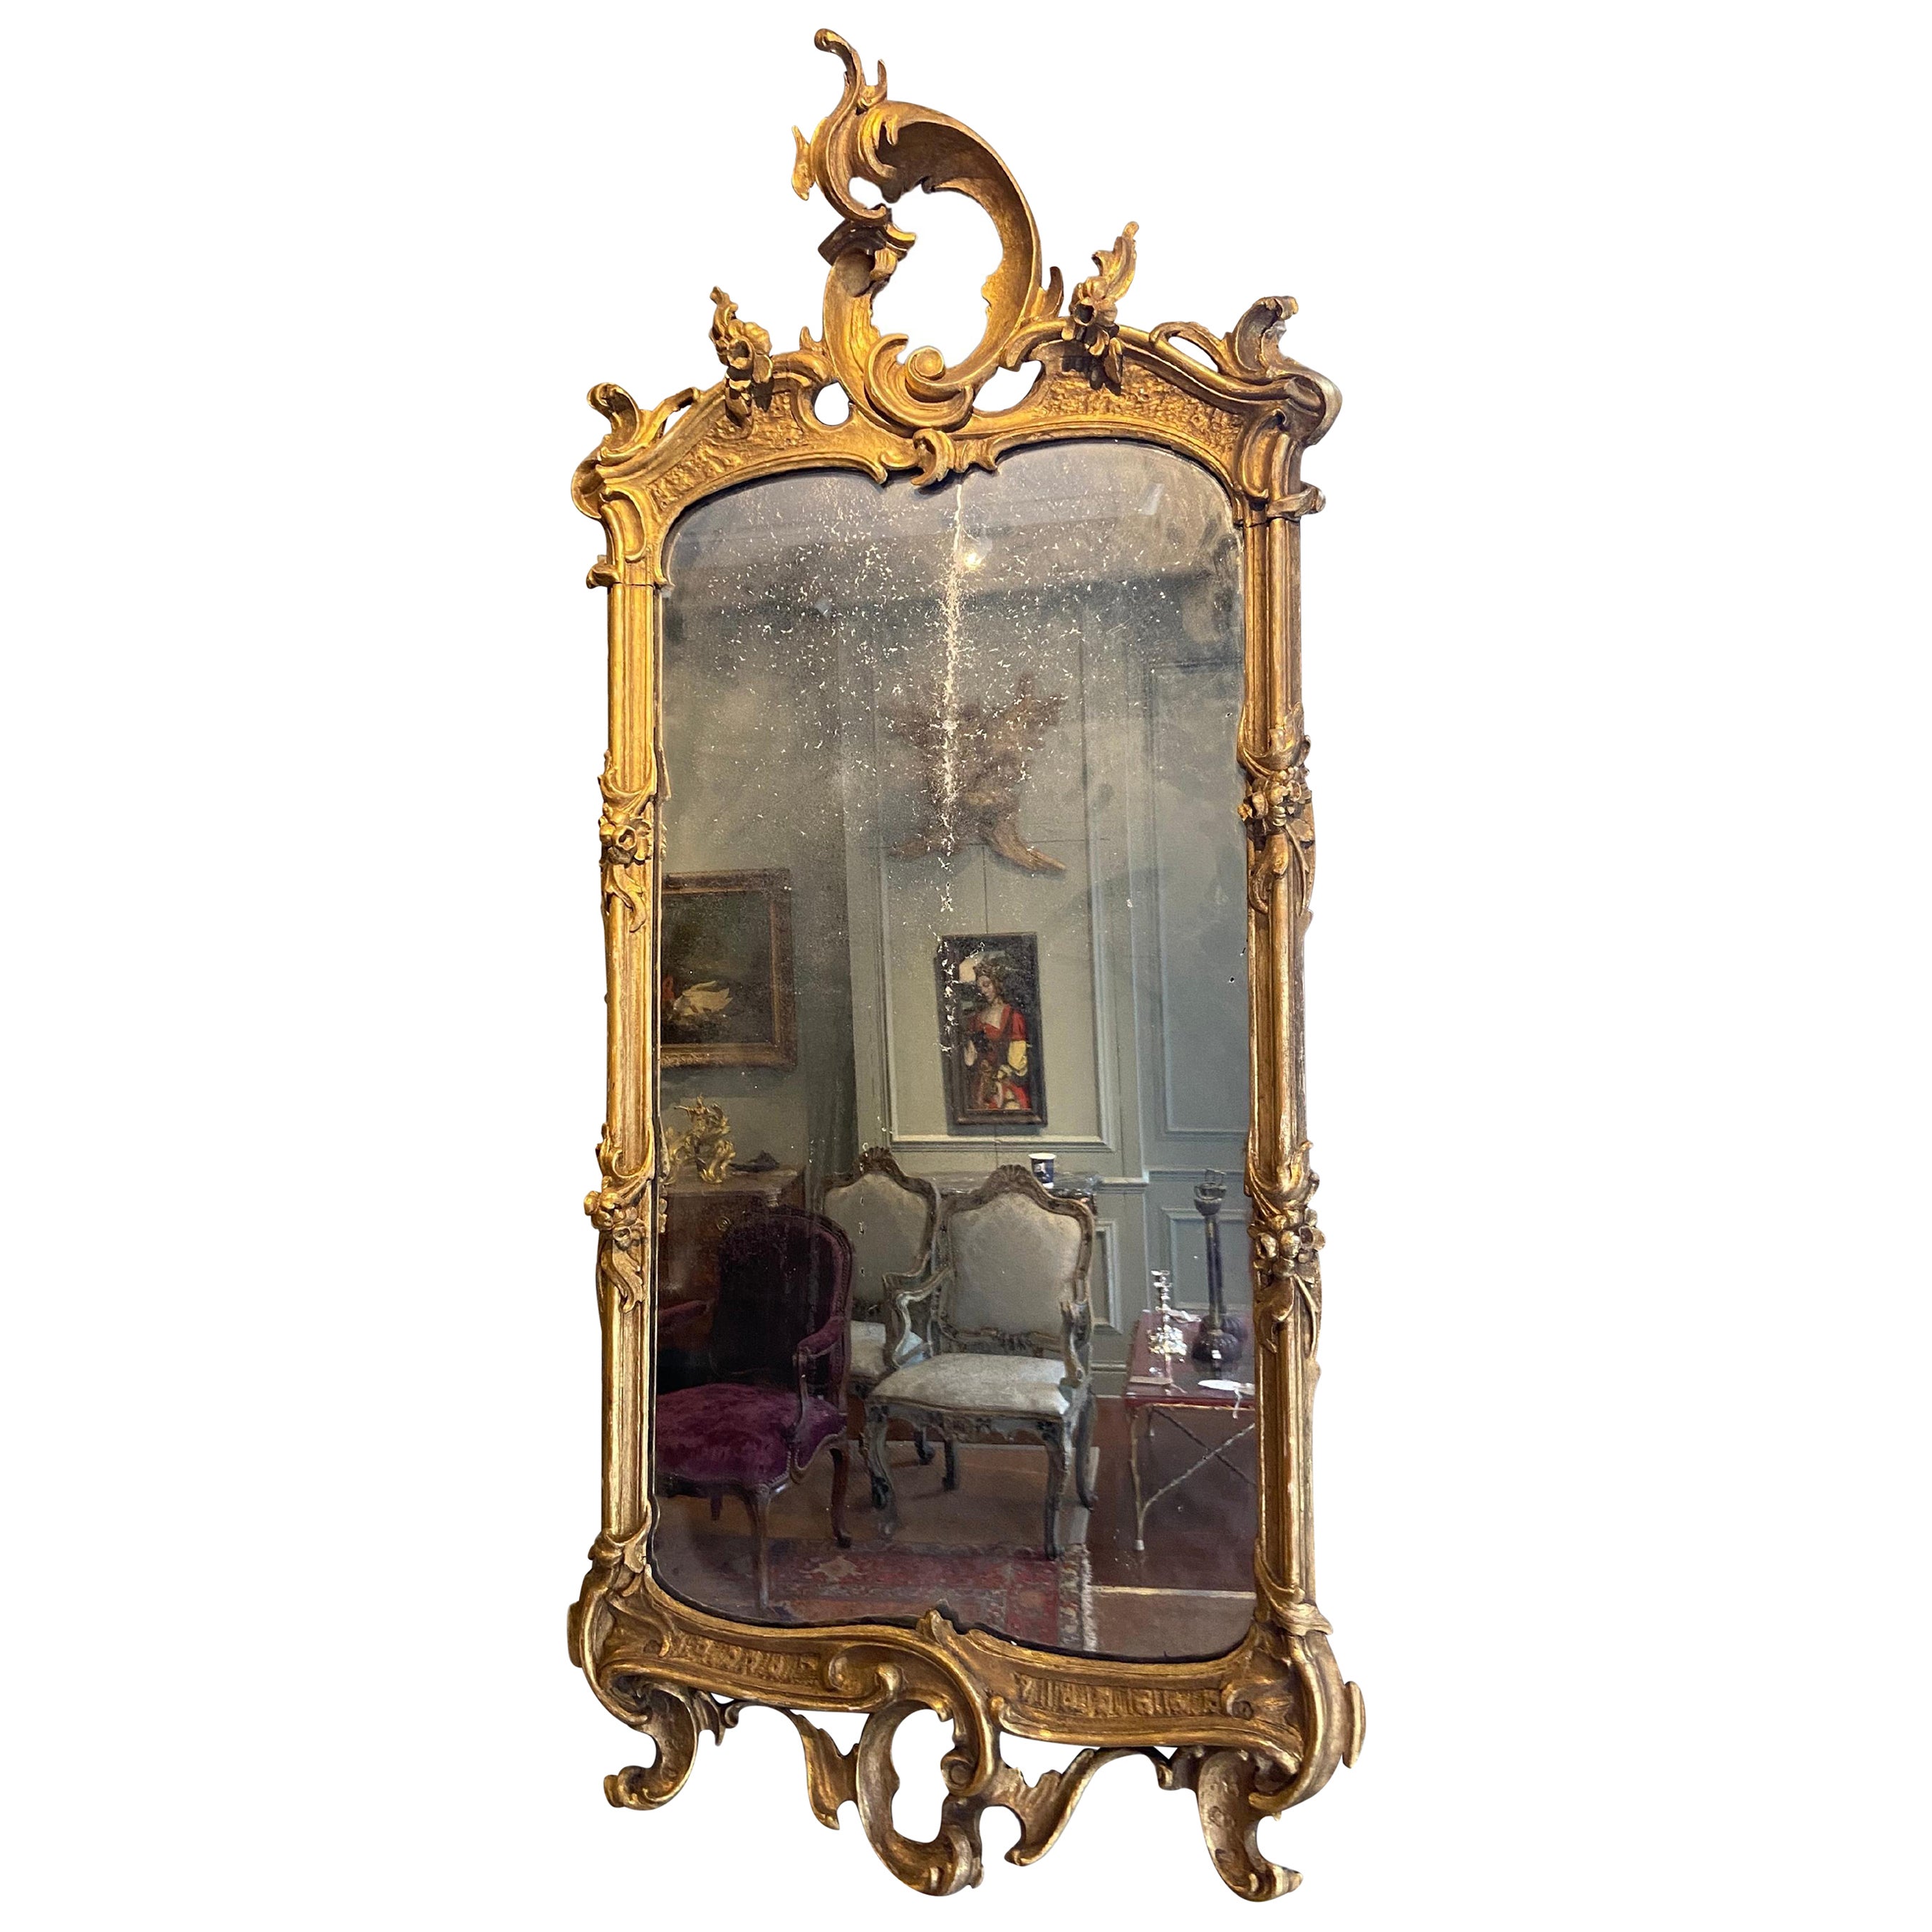 Miroir doré d'Italie du Nord de la fin du XVIIIe siècle